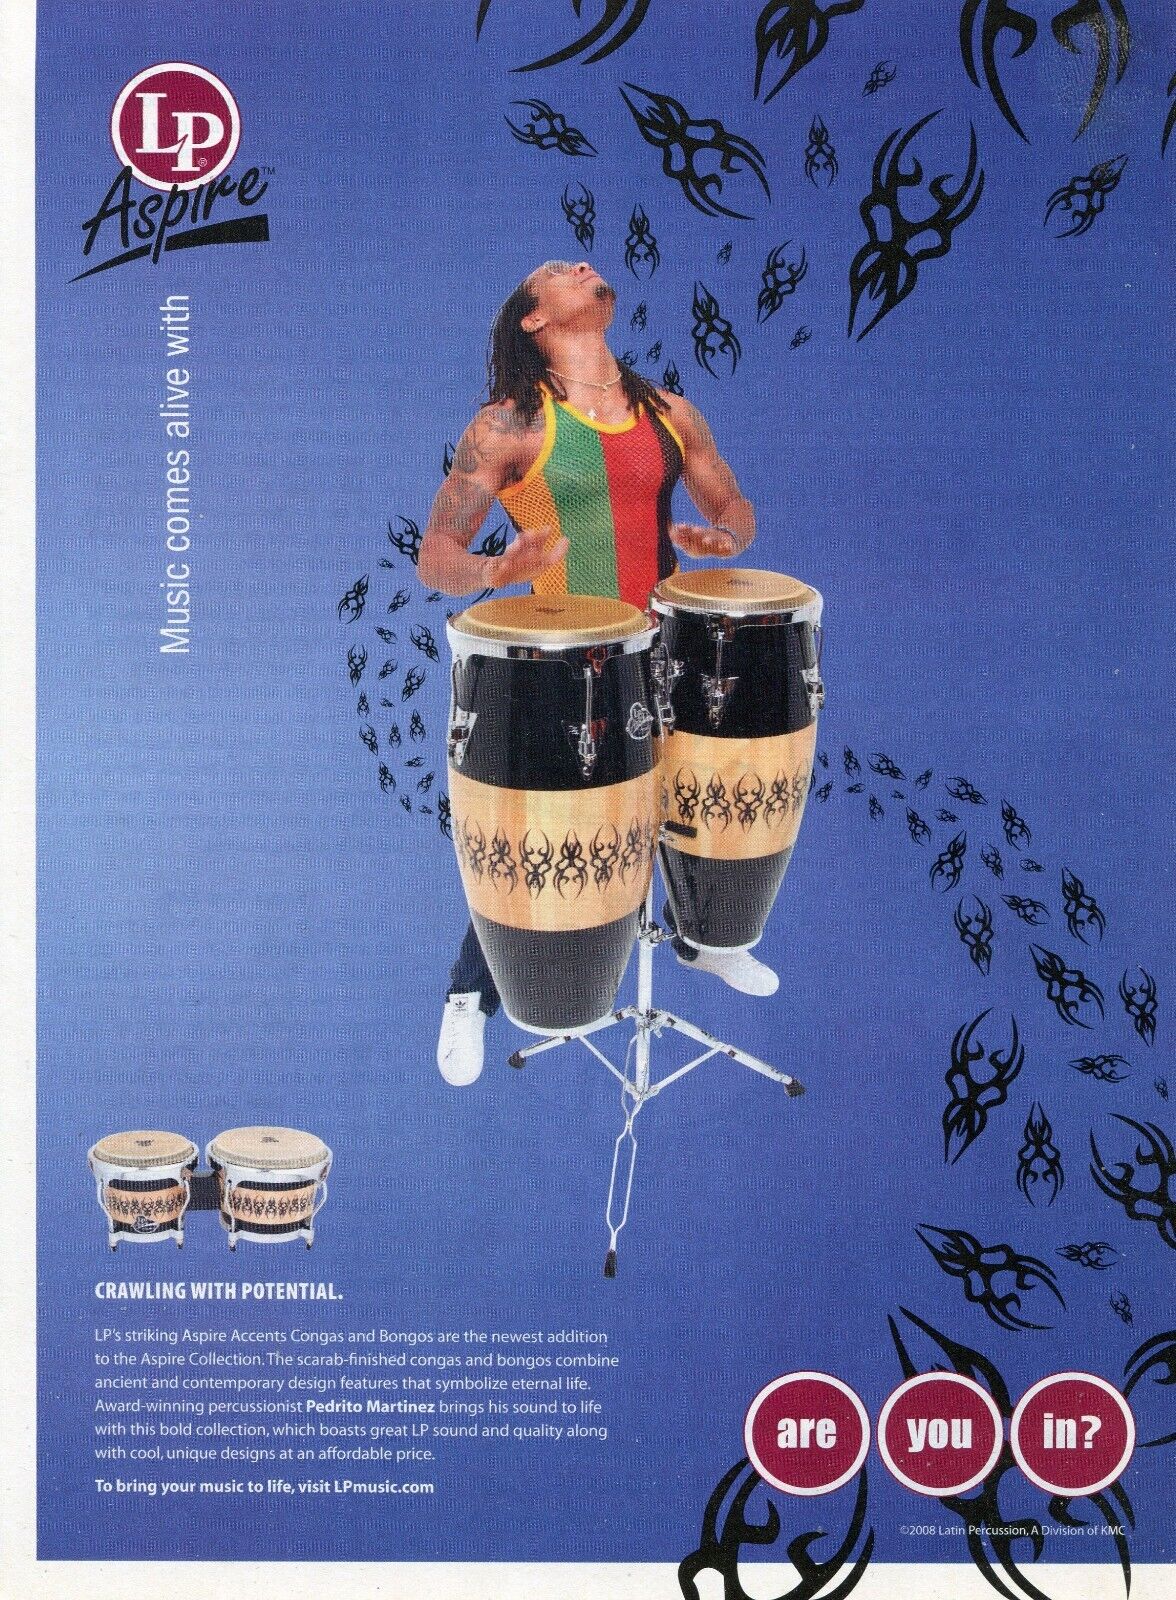 2008 Print Ad of Latin Percussion LP Aspire Accent Congas w Pedrito Martinez